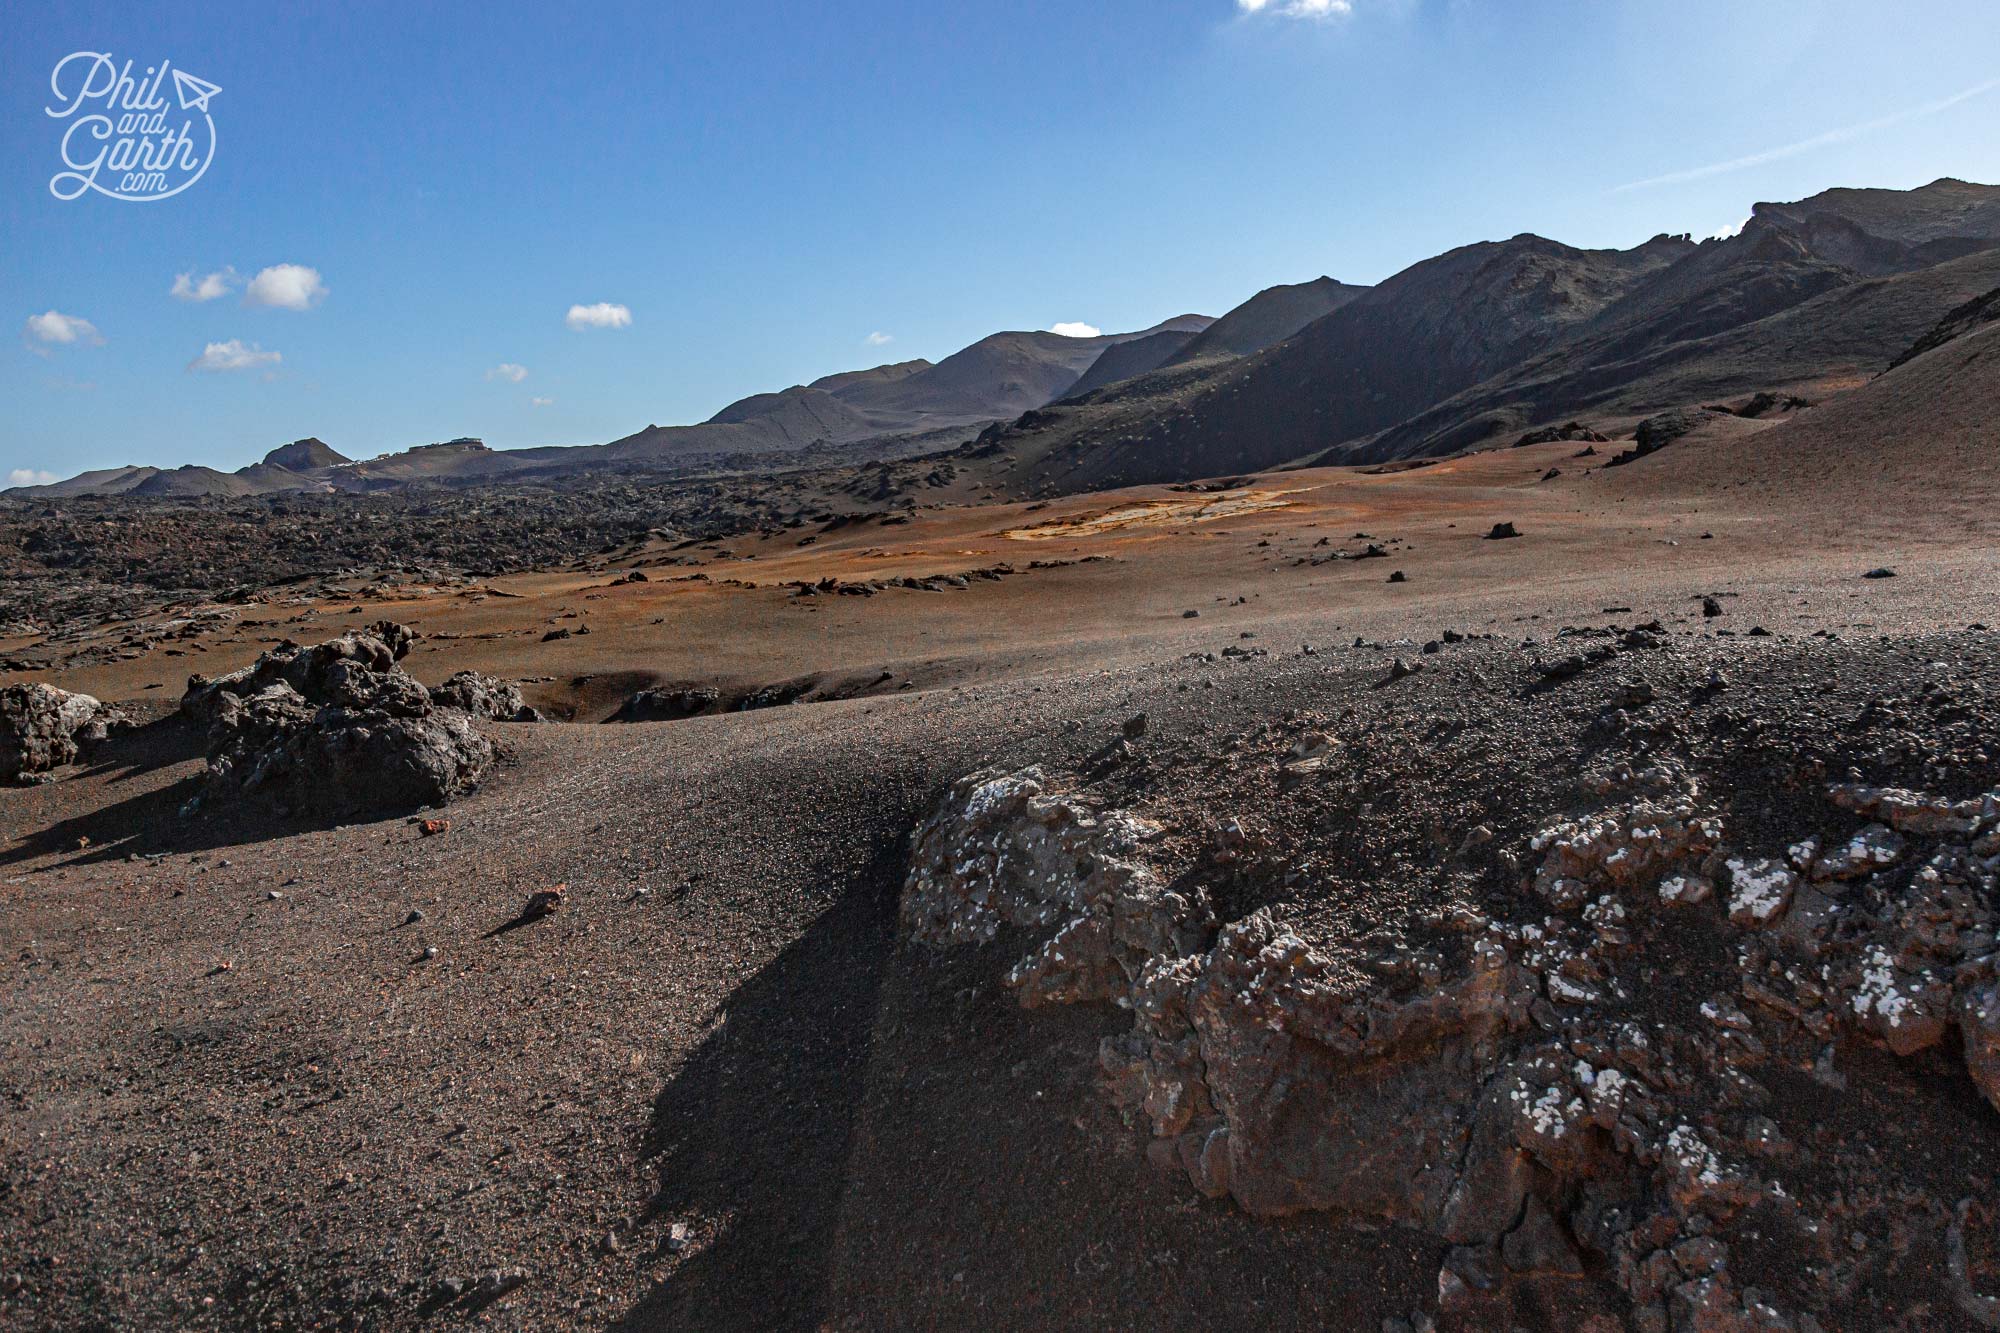 The Mars-like landscapes of Timanfaya National Park